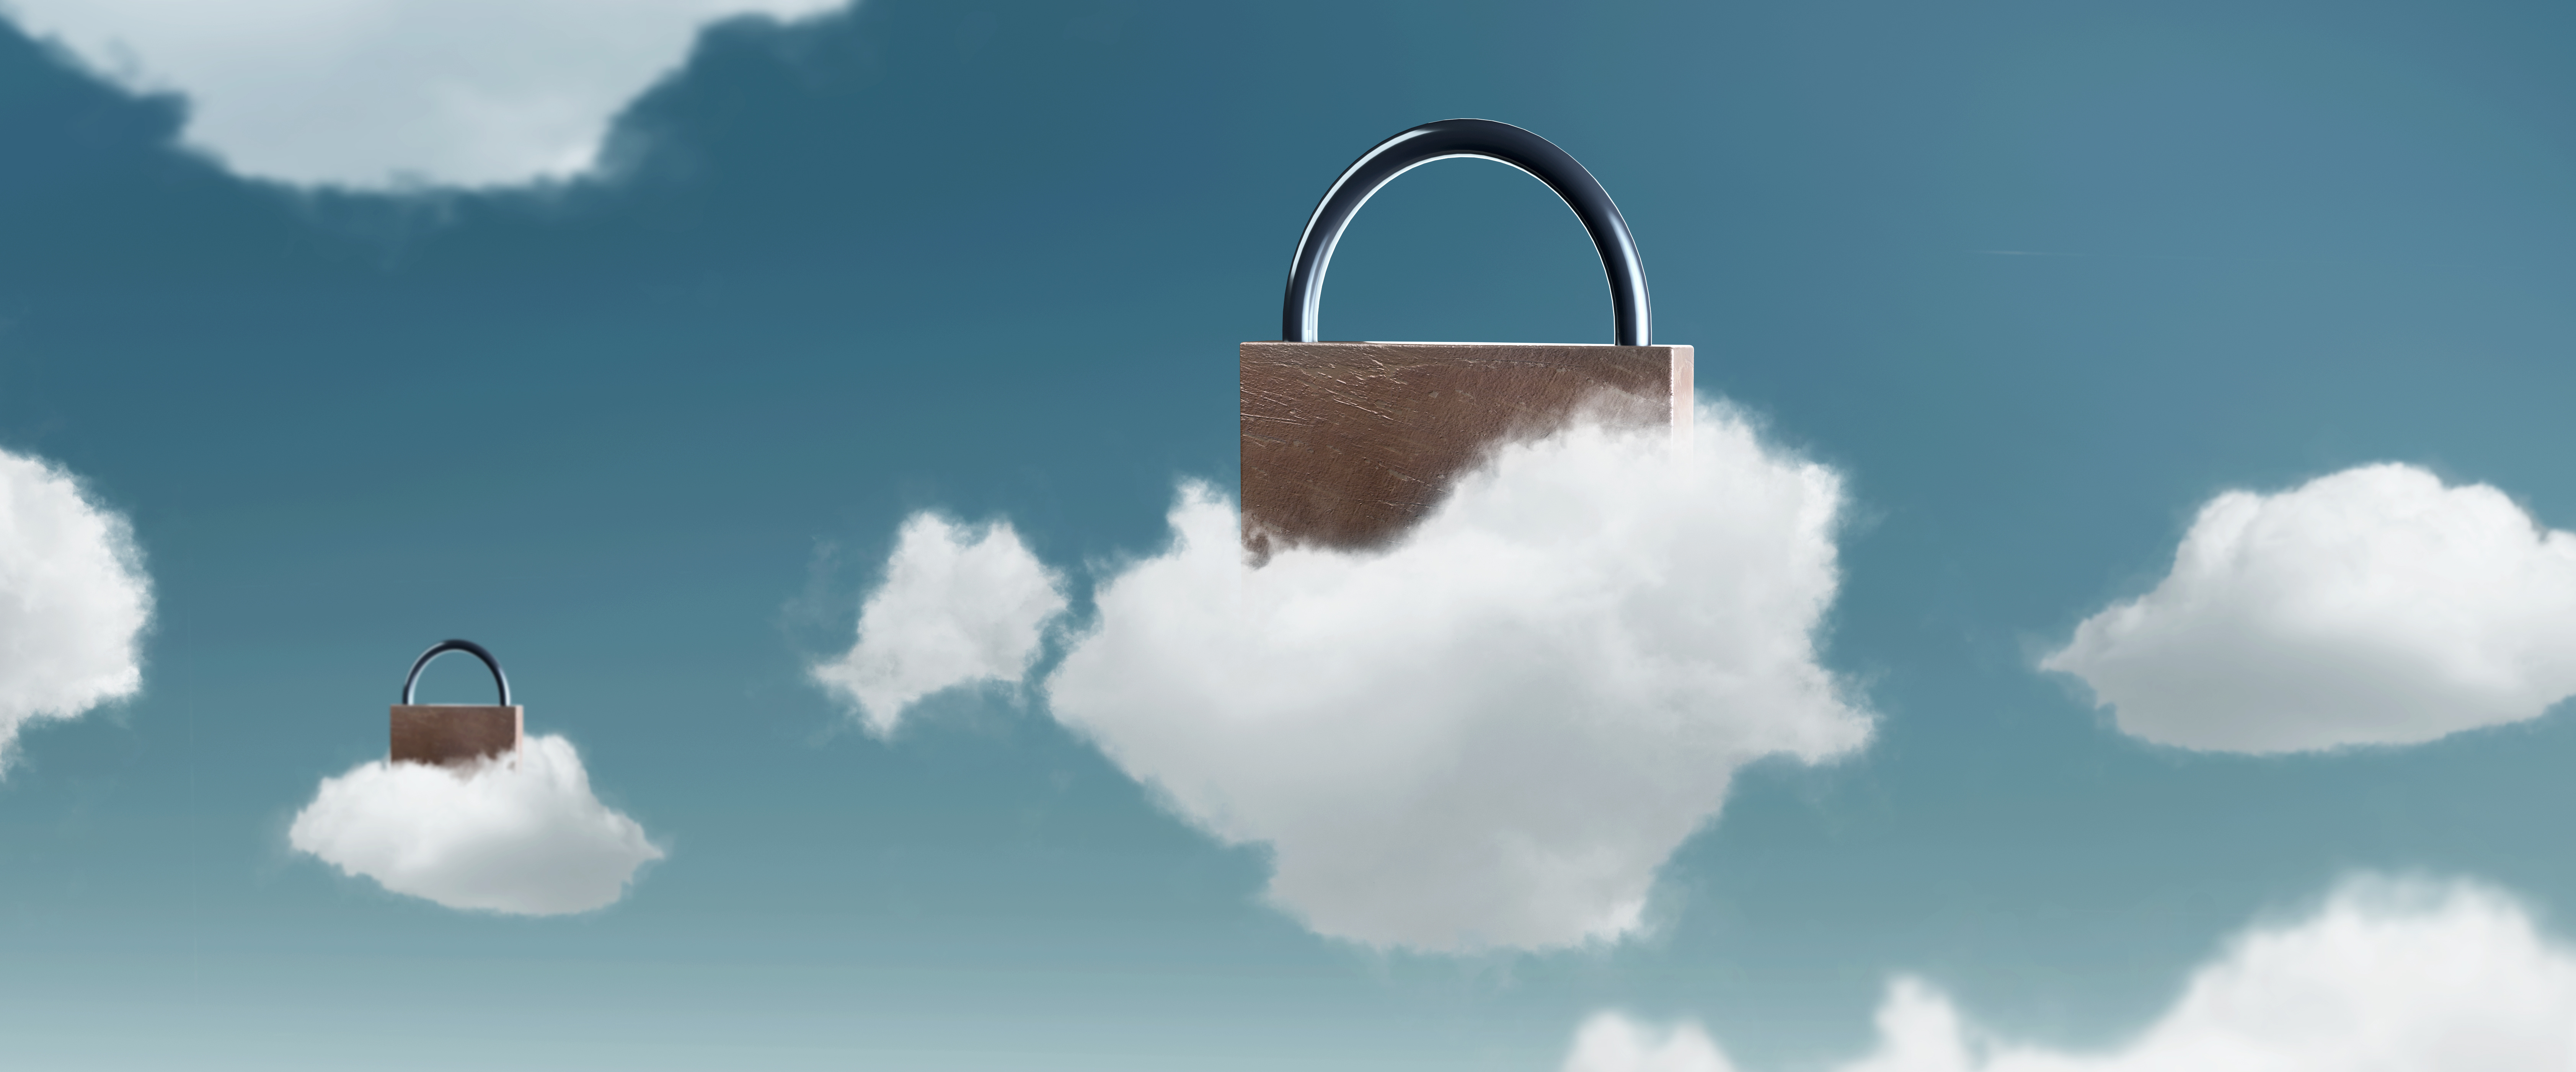 Evitare il cloud lock-in: cosa negoziare con i partner